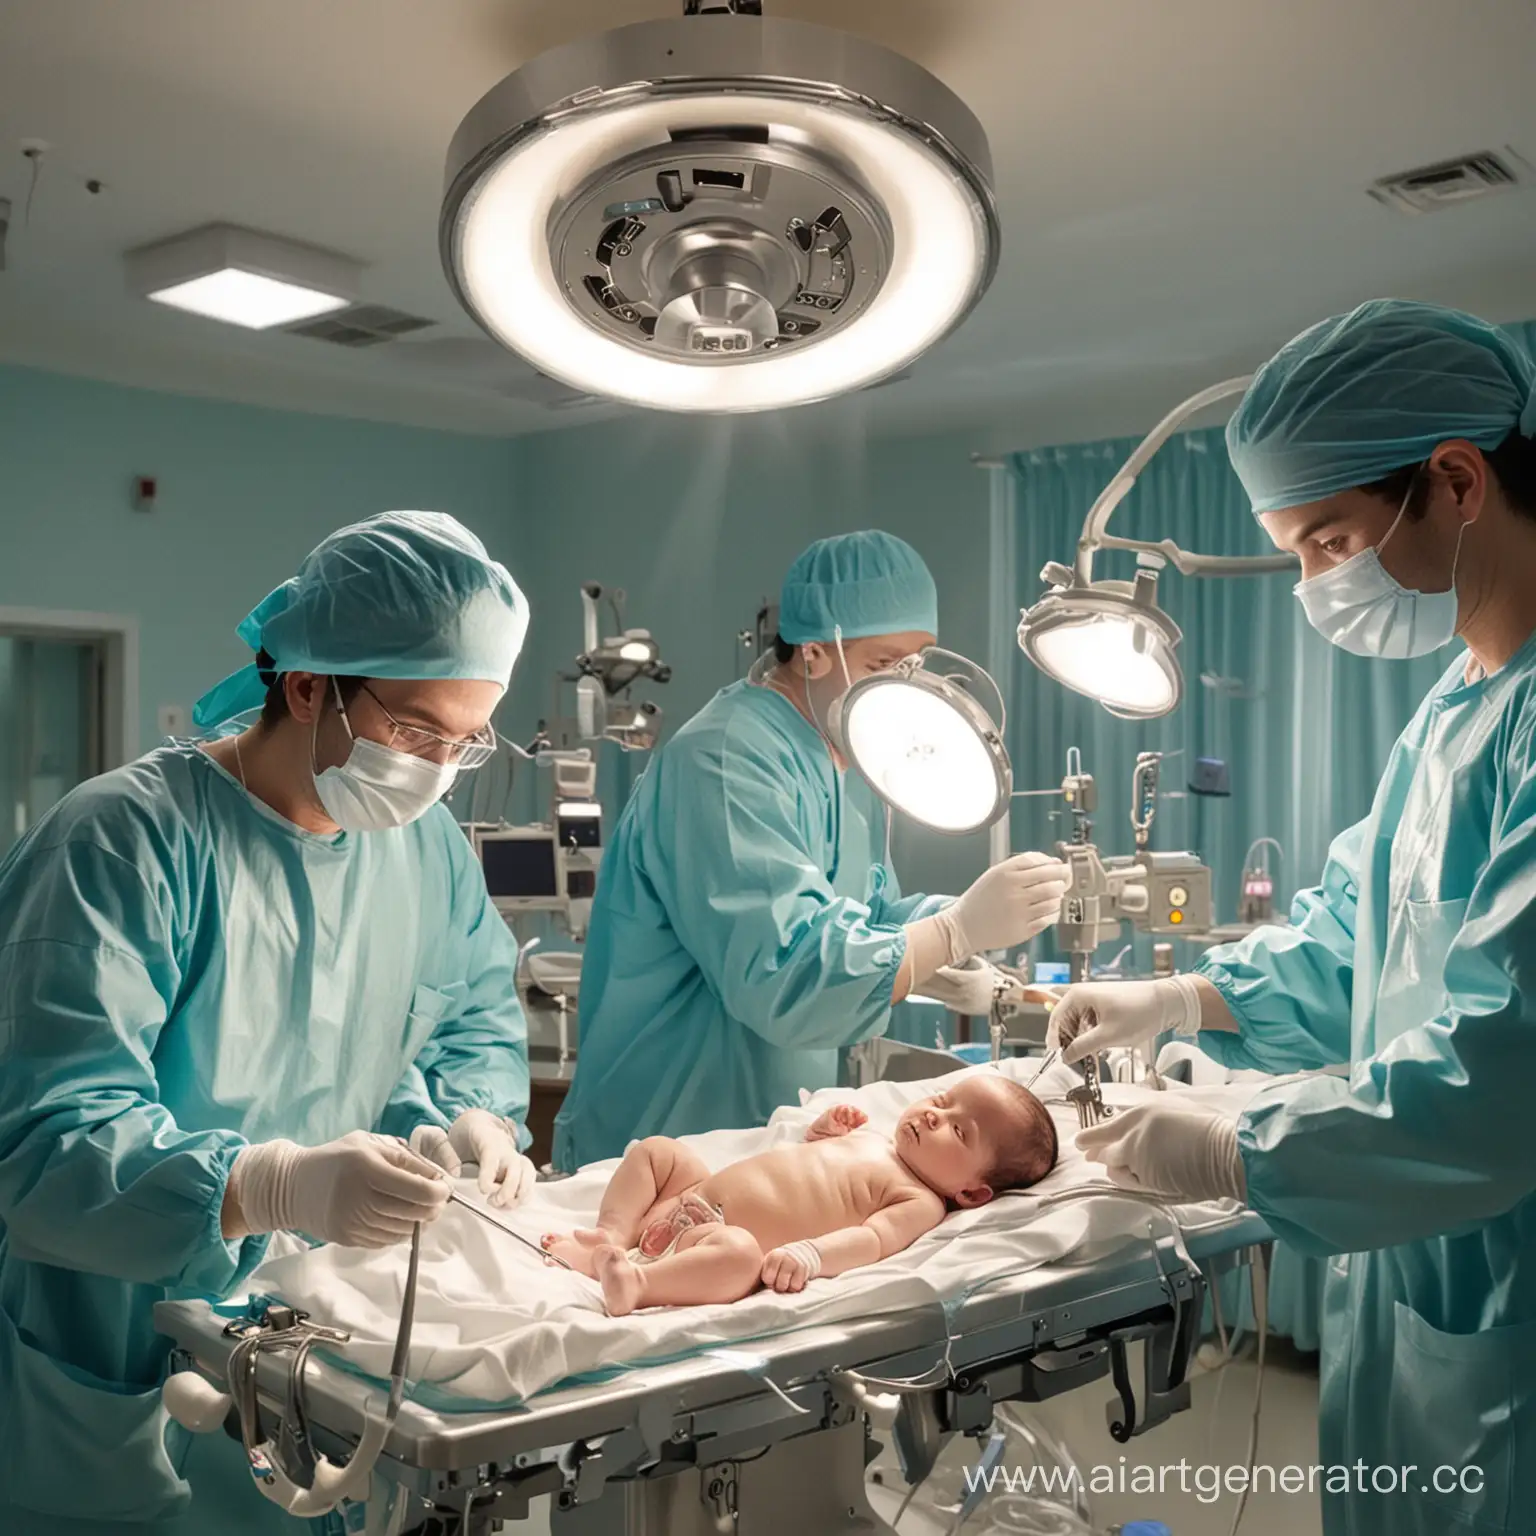 Операционная, 2 хирурга оперируют новорожденного ребенка, много света, блестящие инструменты